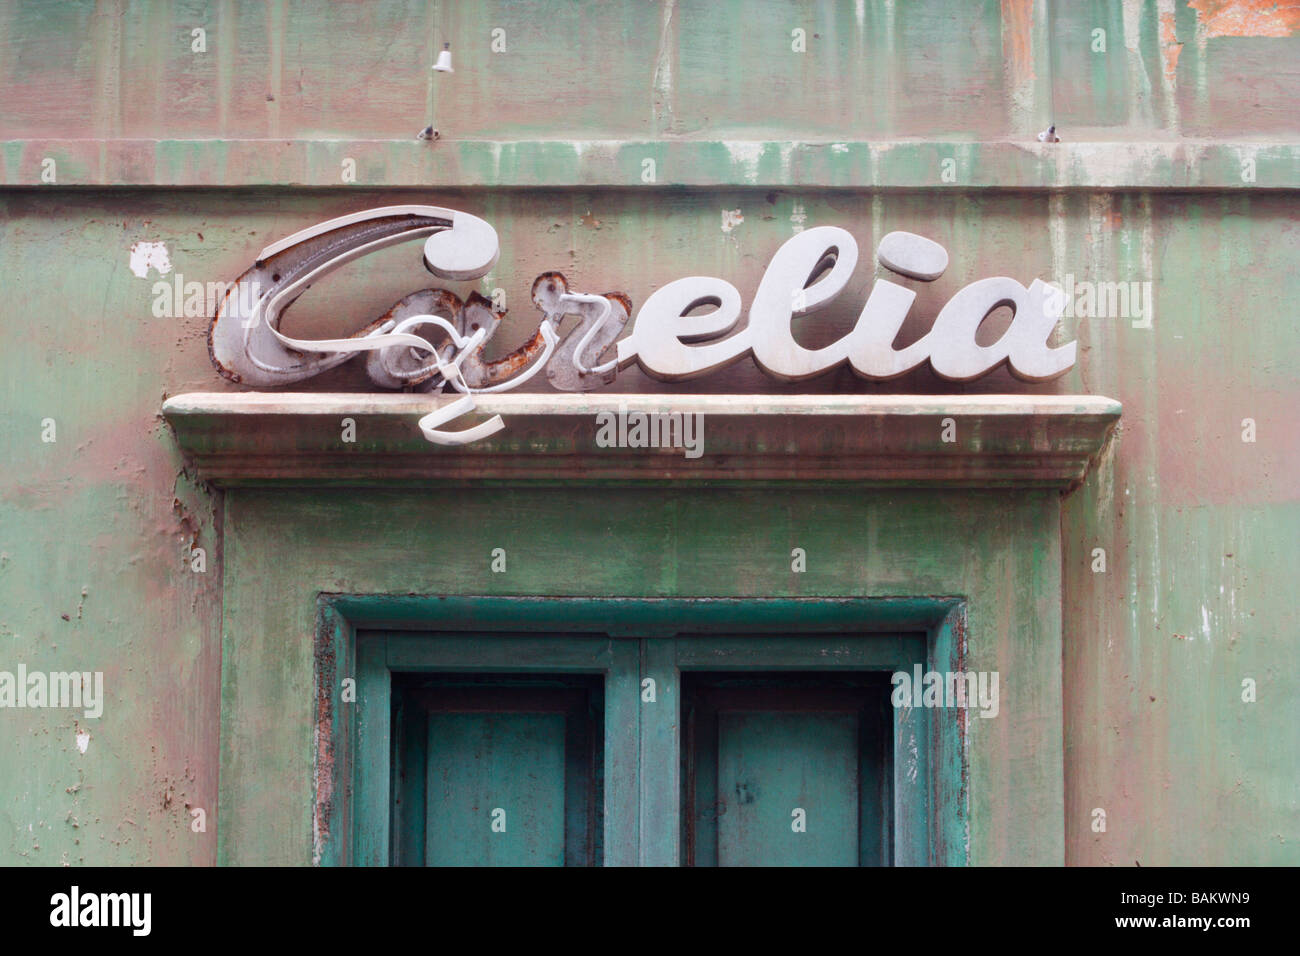 Broken neon sign on derelict building in Spain Stock Photo